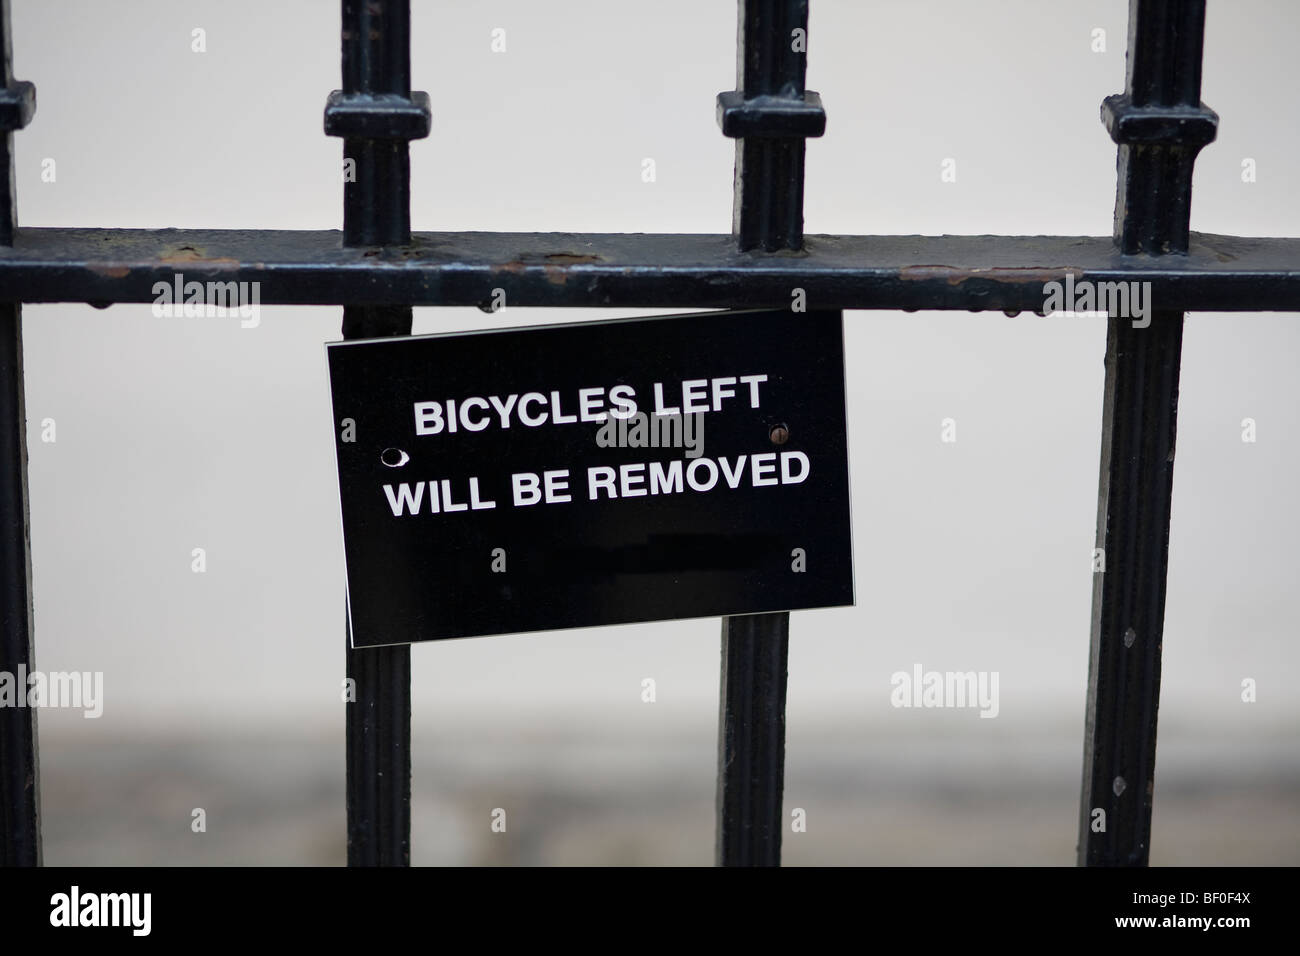 Escritura blanca, "bicicletas izquierda será retirado", en signo de negro sobre negro colgado barandas de hierro forjado. Londres, Reino Unido. Foto de stock